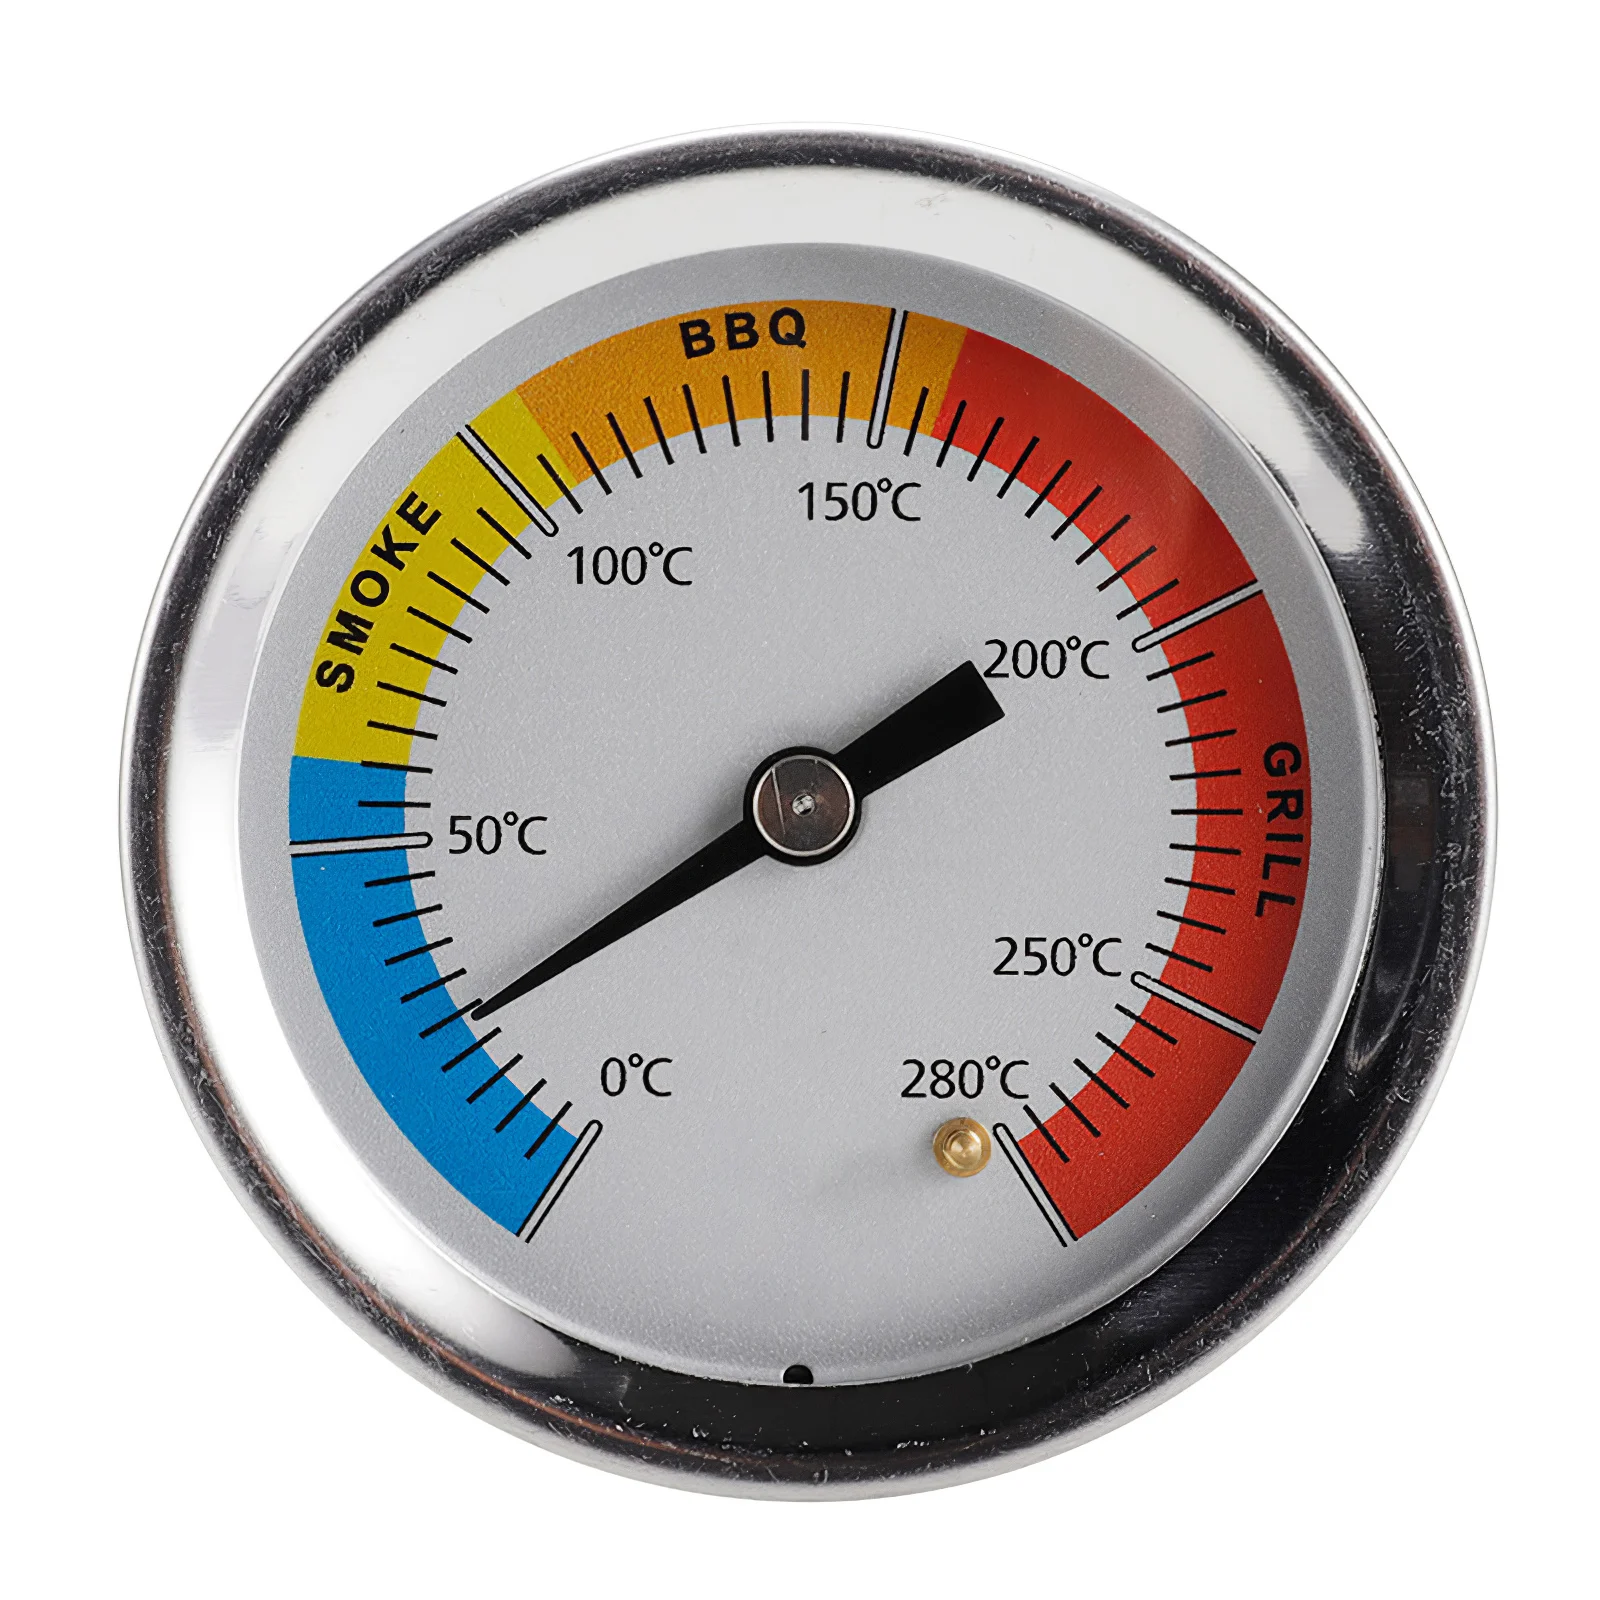 

Кухонный датчик температуры 0-280 ℃ из нержавеющей стали для барбекю, барбекю, курильщика, гриля, термометр, датчик температуры, термометр для...